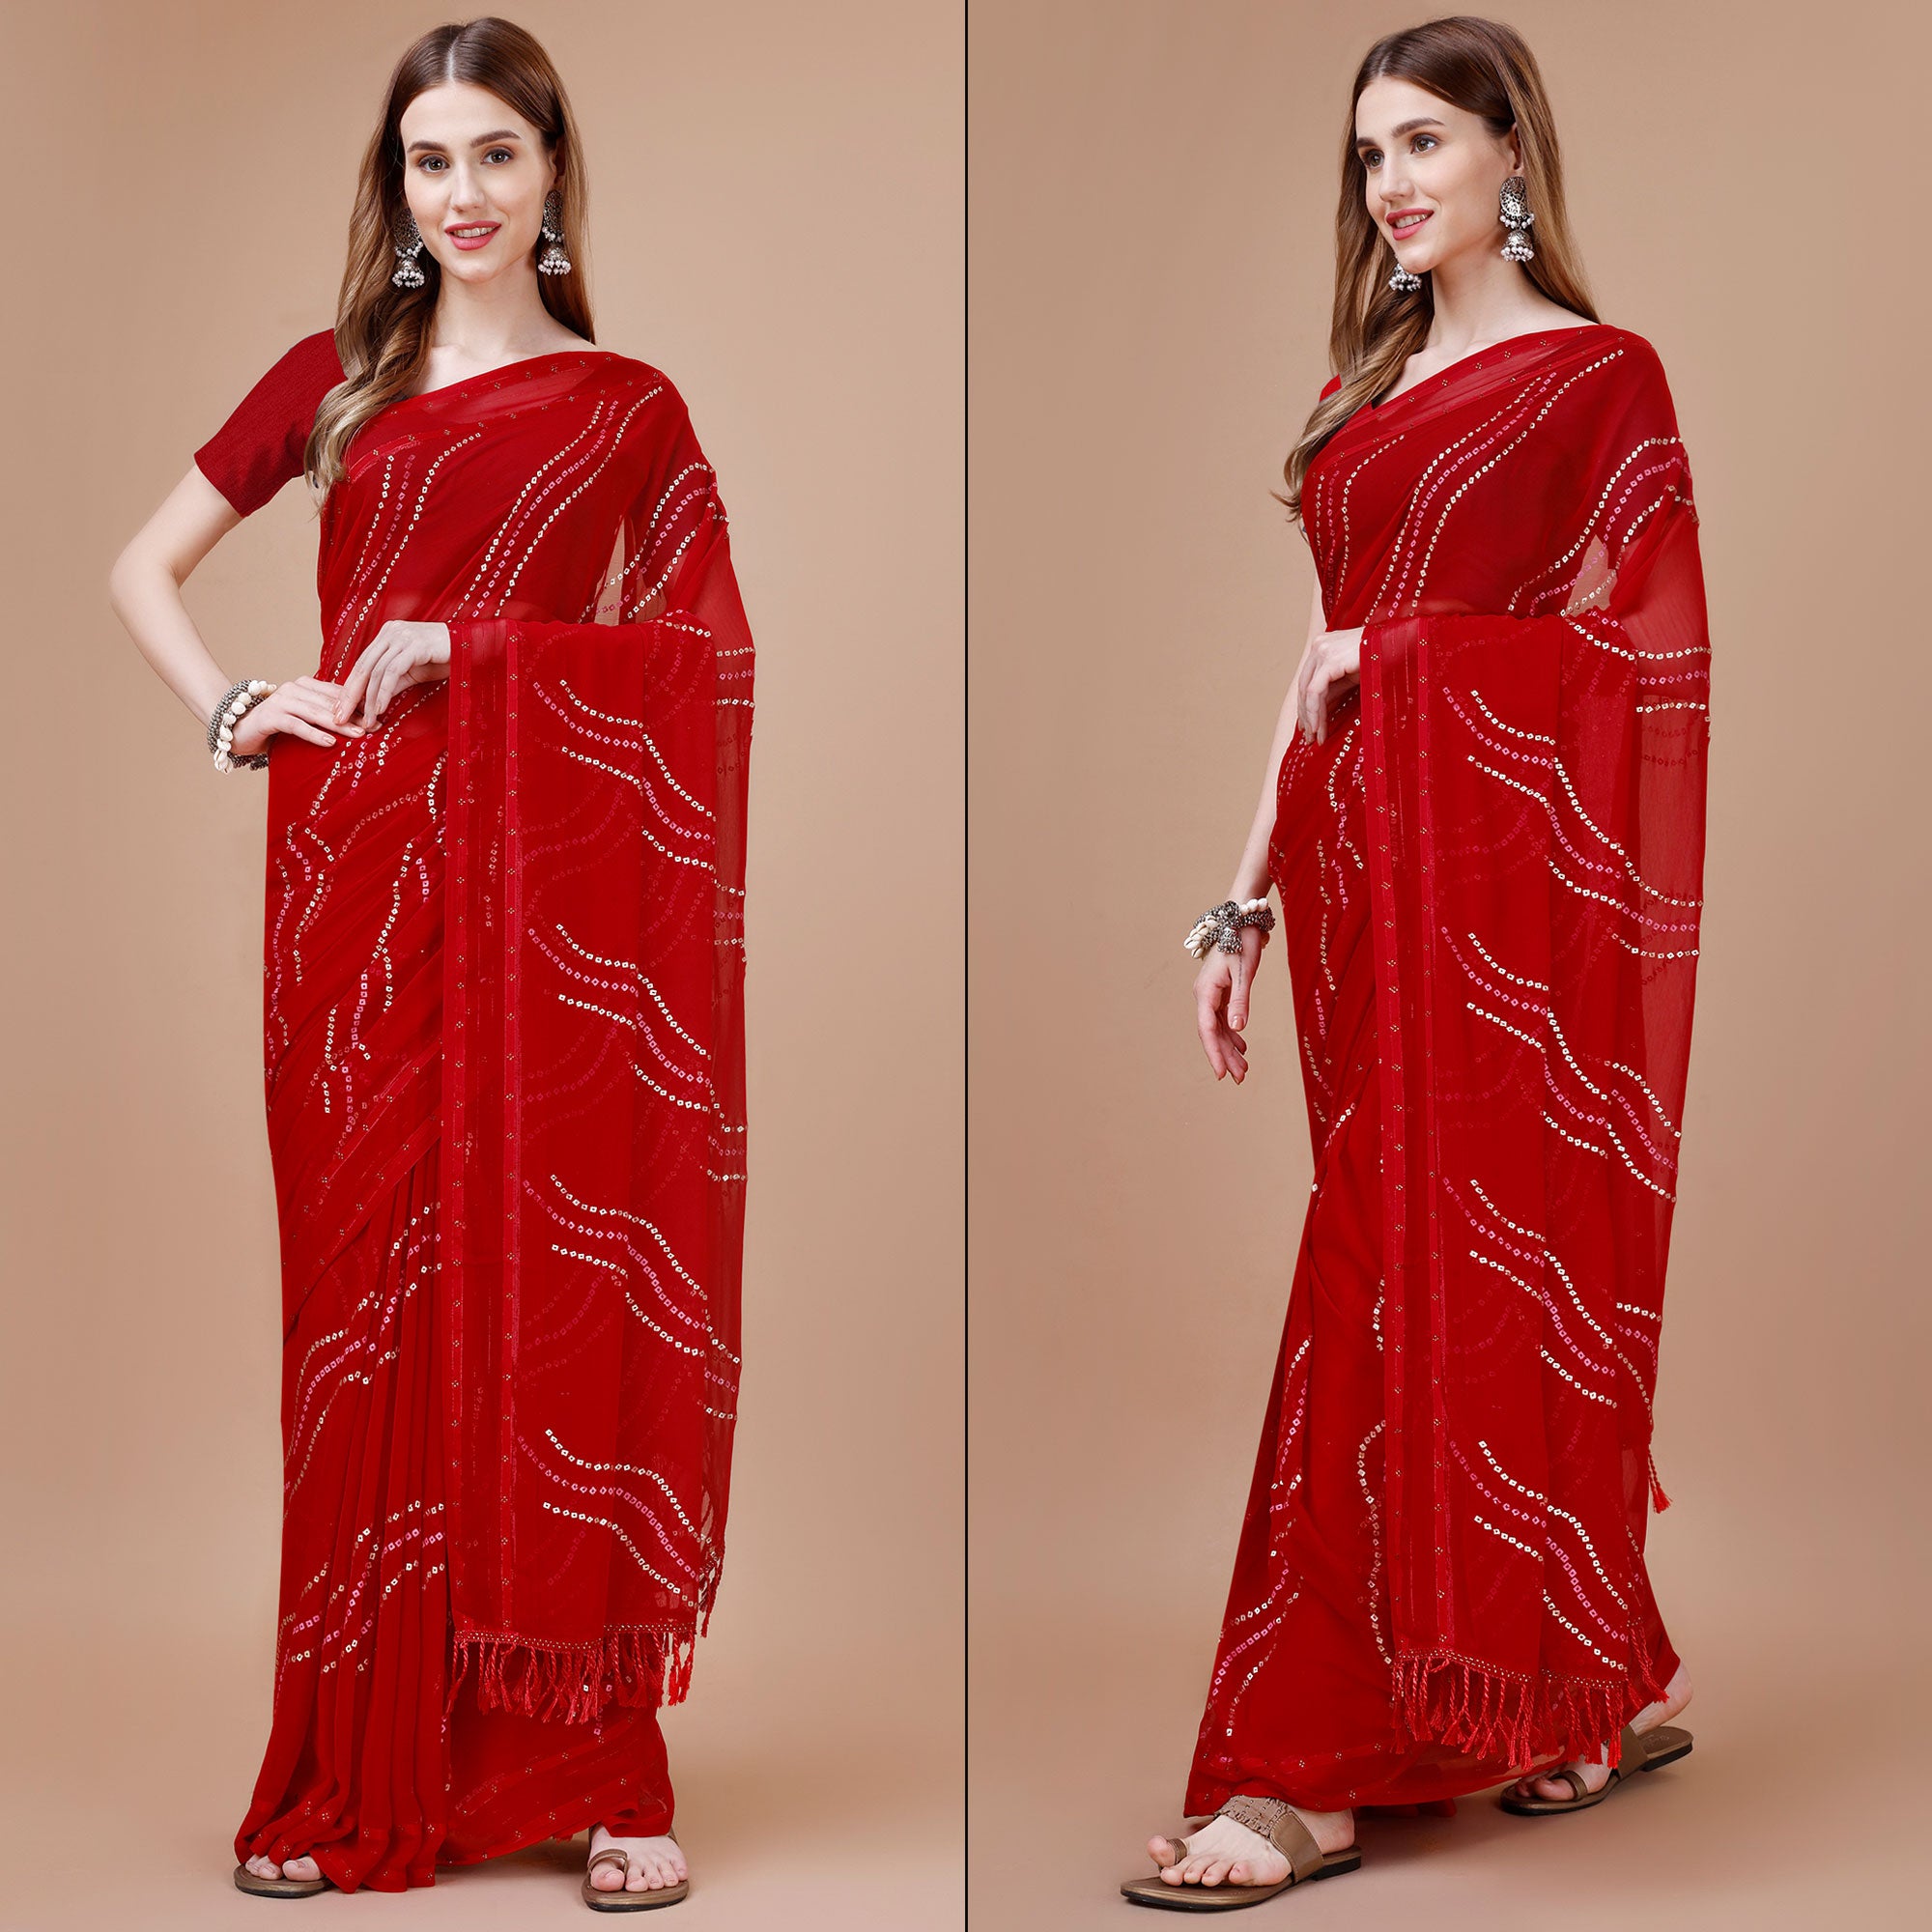 Red Bandhani Printed Chiffon Saree With Tassels